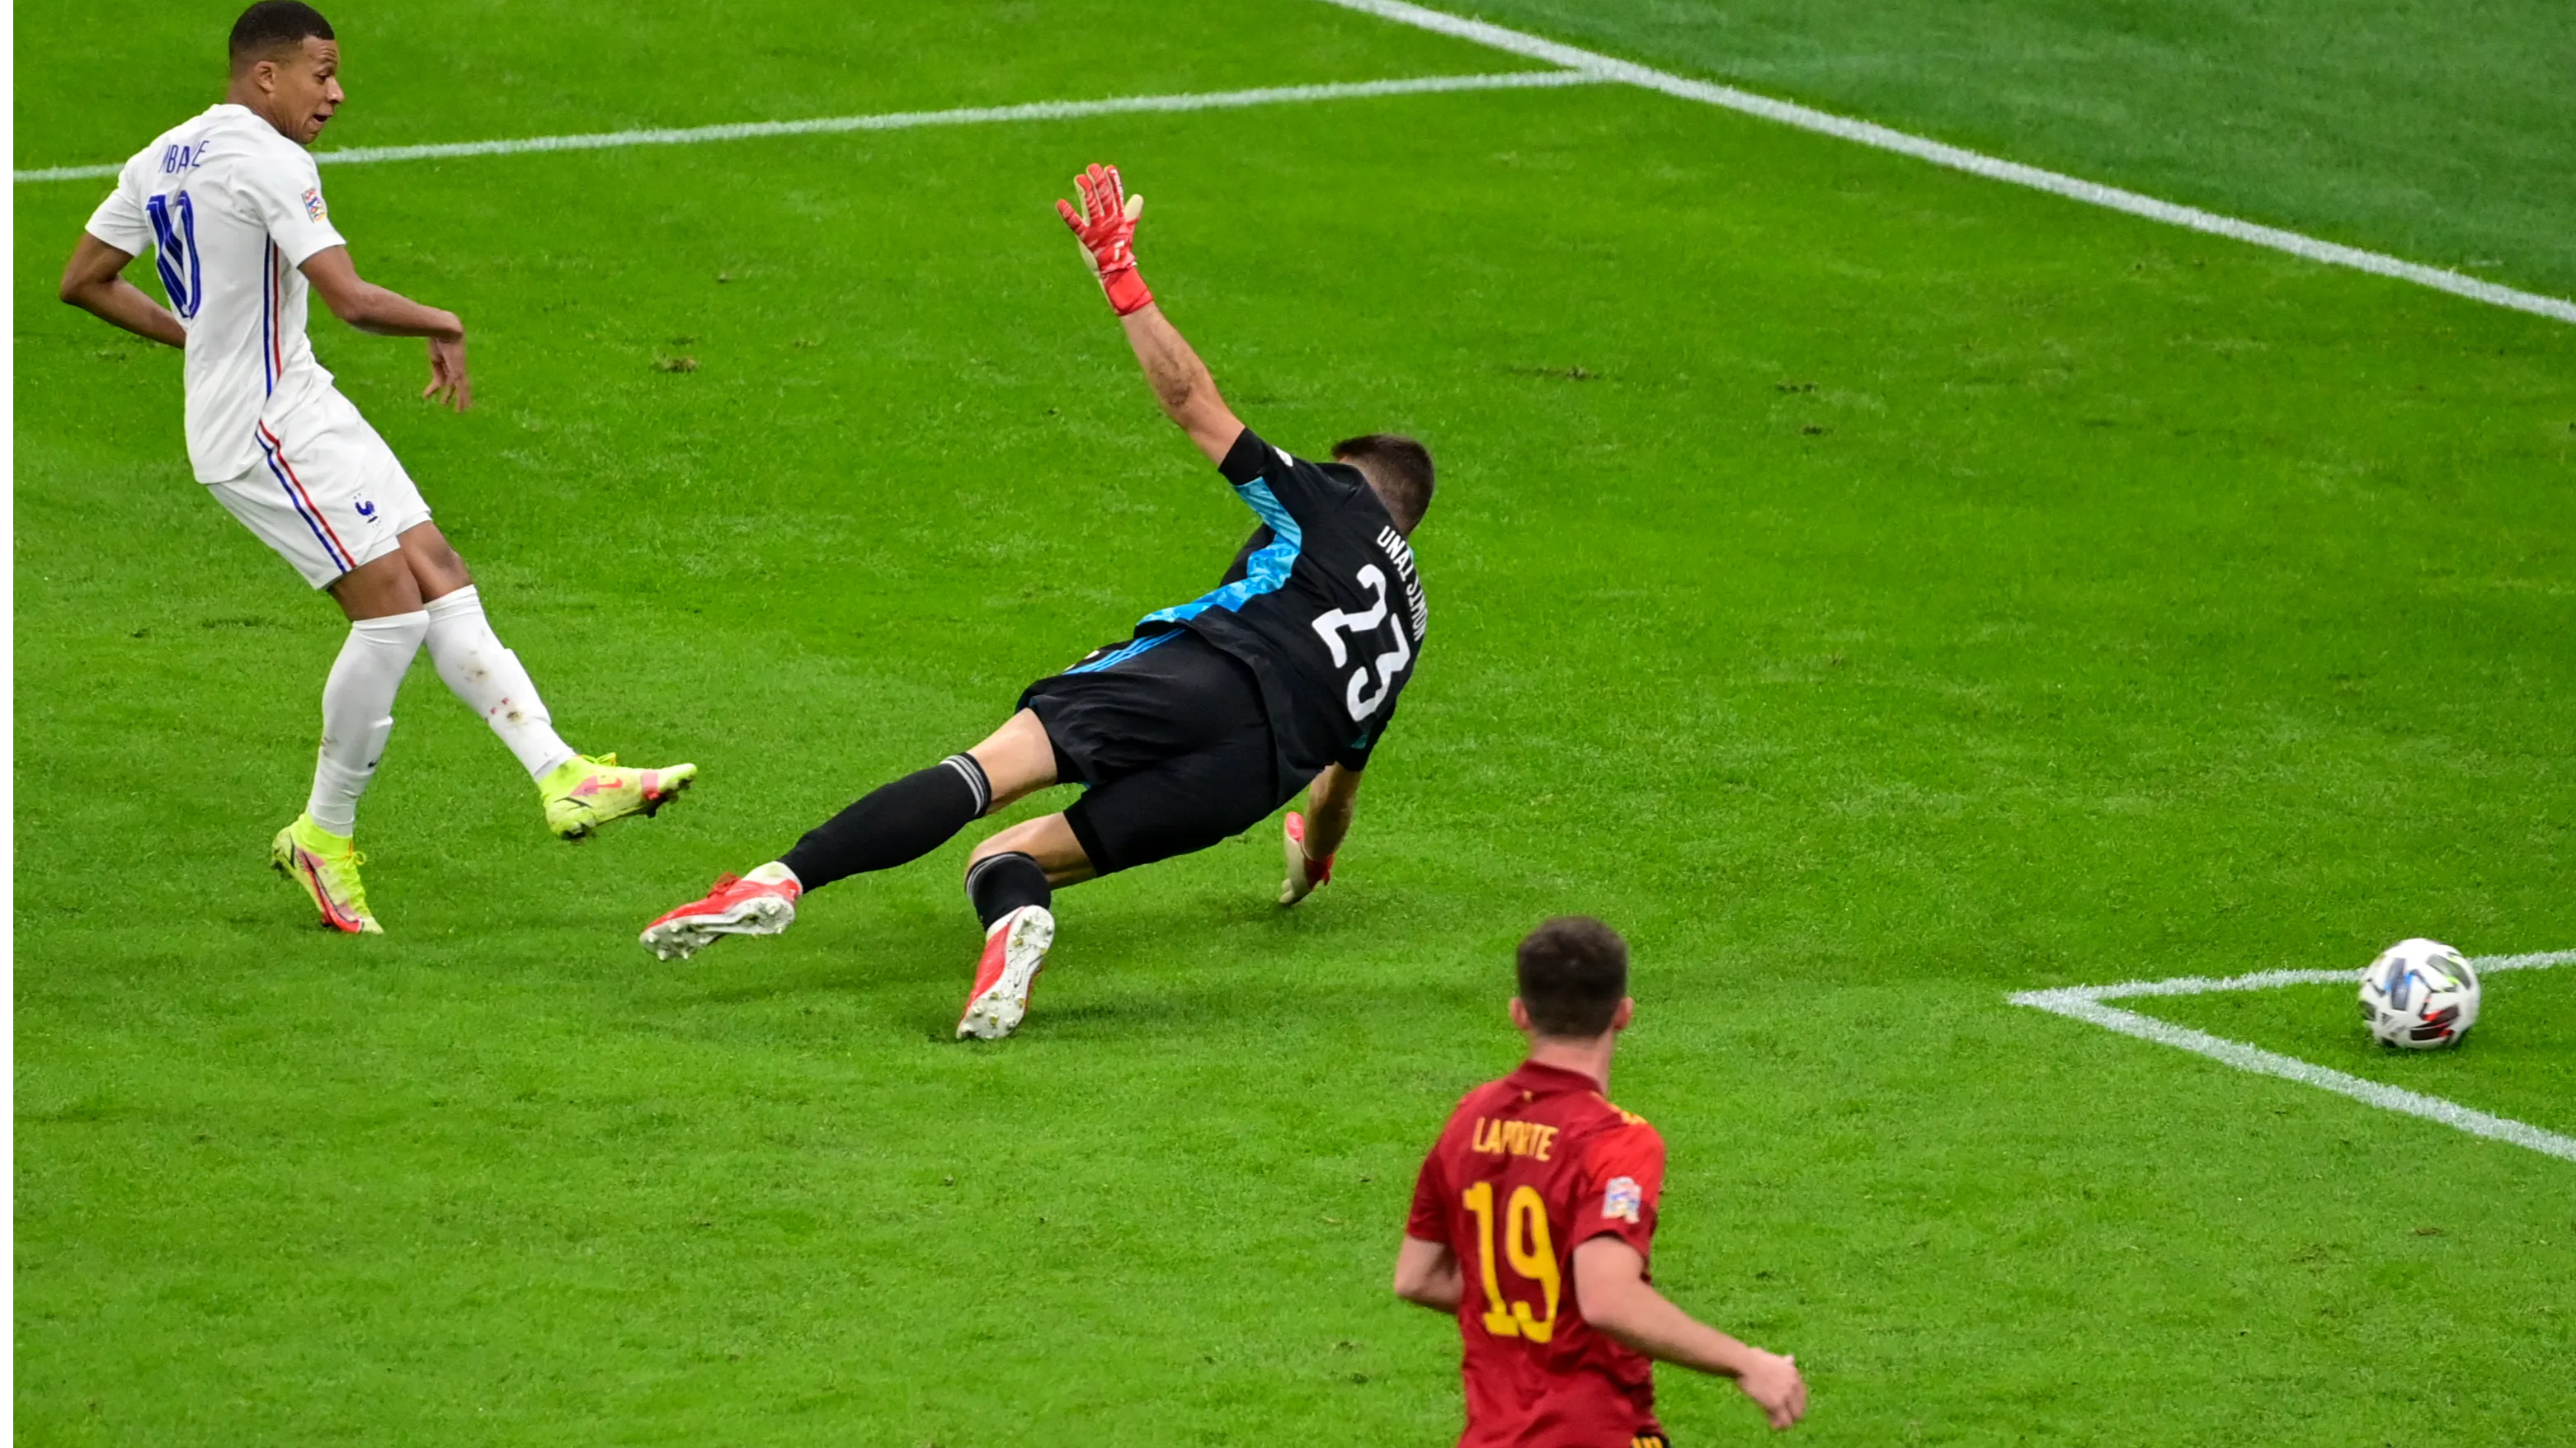 Nations League final: Kylian Mbappe’s winner vs Spain sparks offside debate